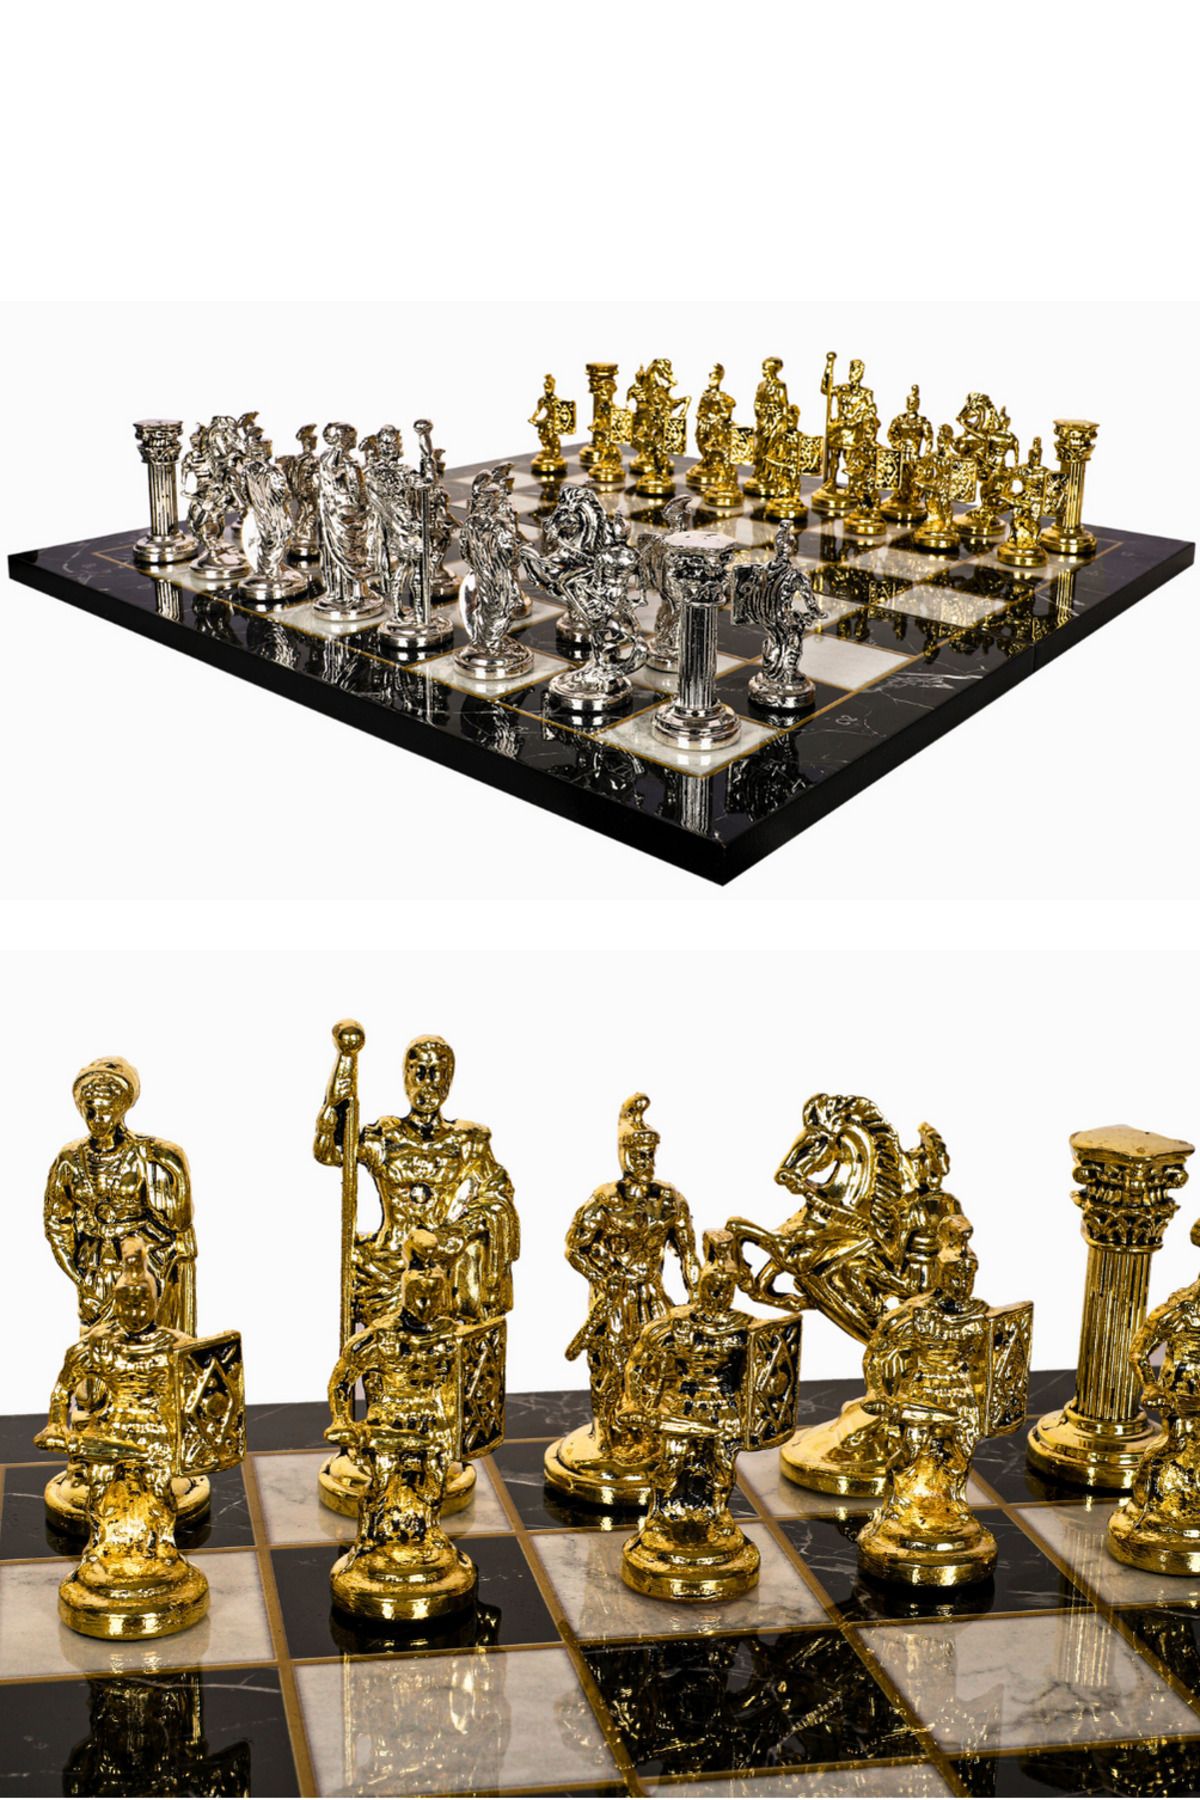 Cooper Chess Büyük Metal Satranç Takımı | 44cm Mermer Desen Satranç Tahtası-Antik Roma İmparatorluğu Sezar Figür